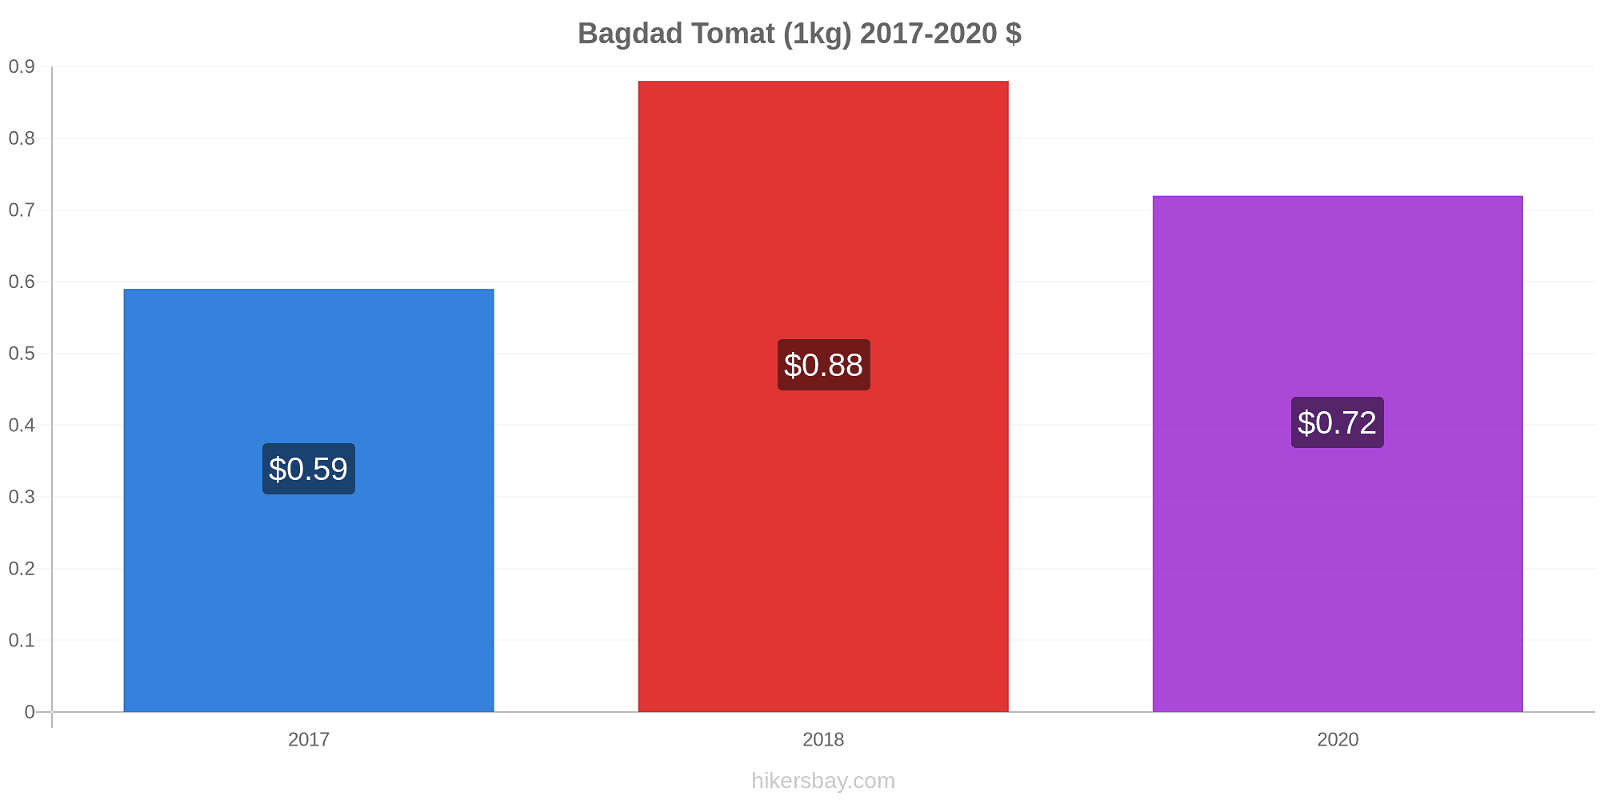 Bagdad perubahan harga Tomat (1kg) hikersbay.com